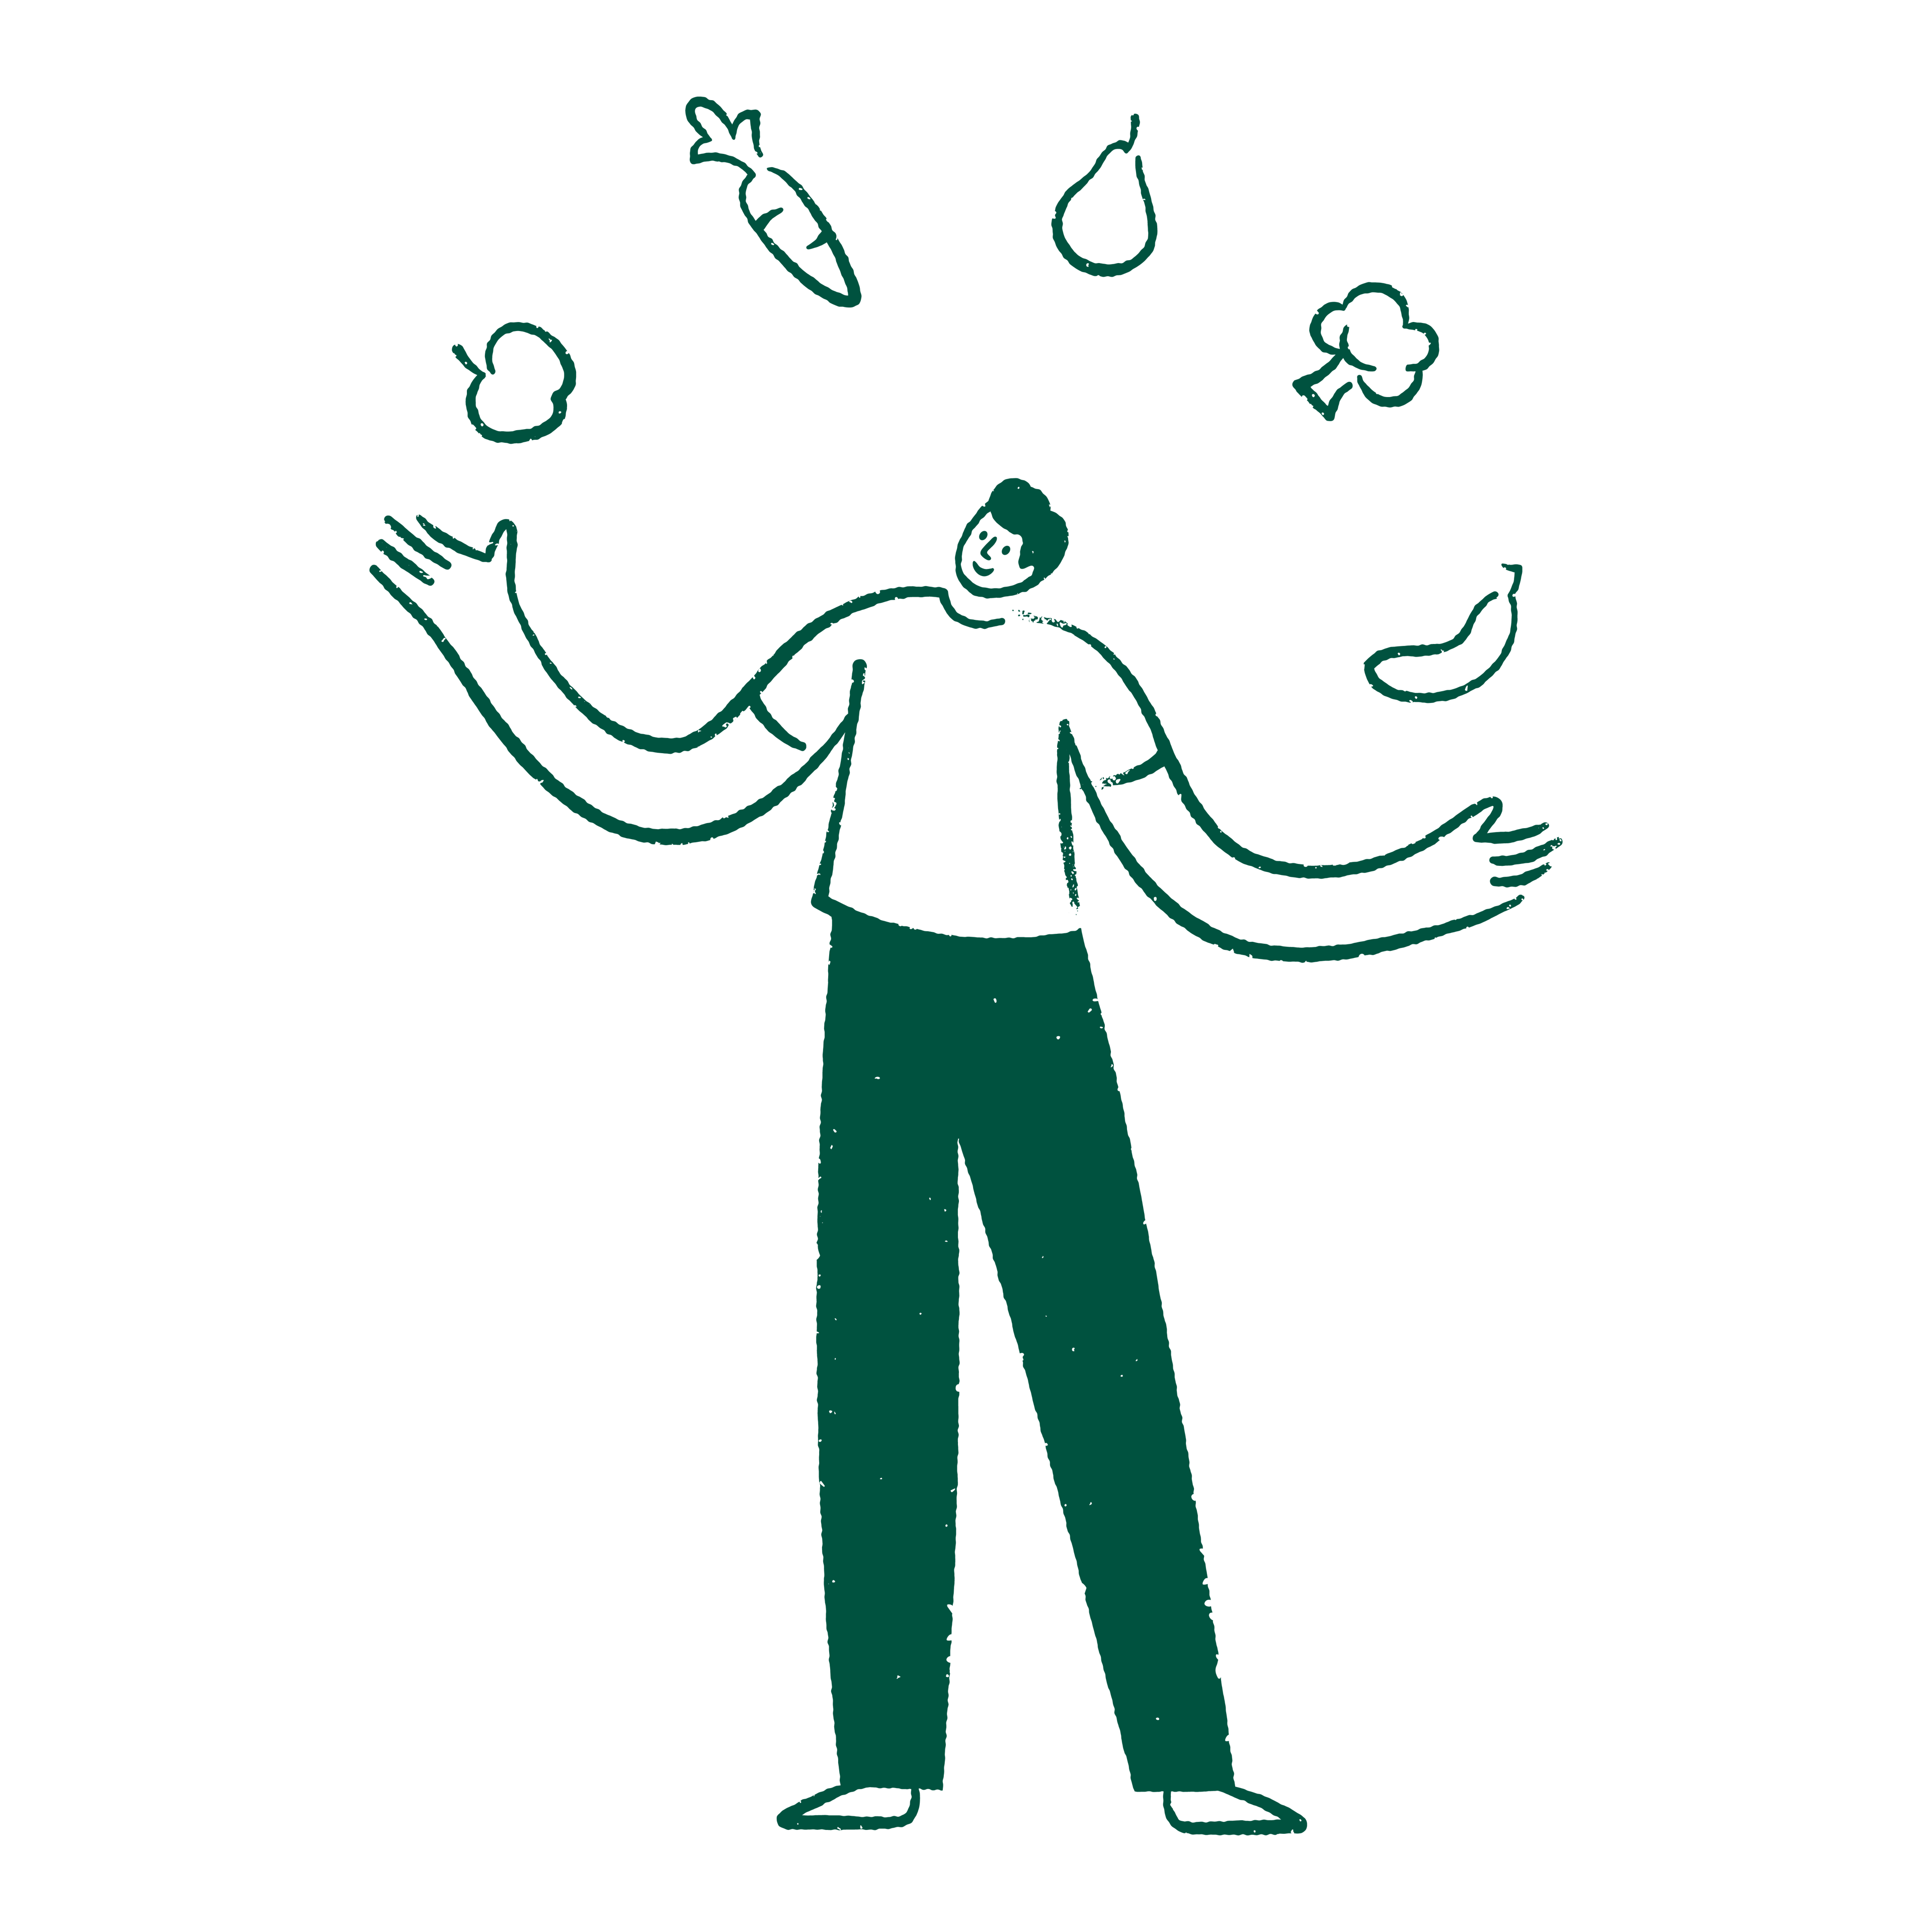 Man juggling fruits